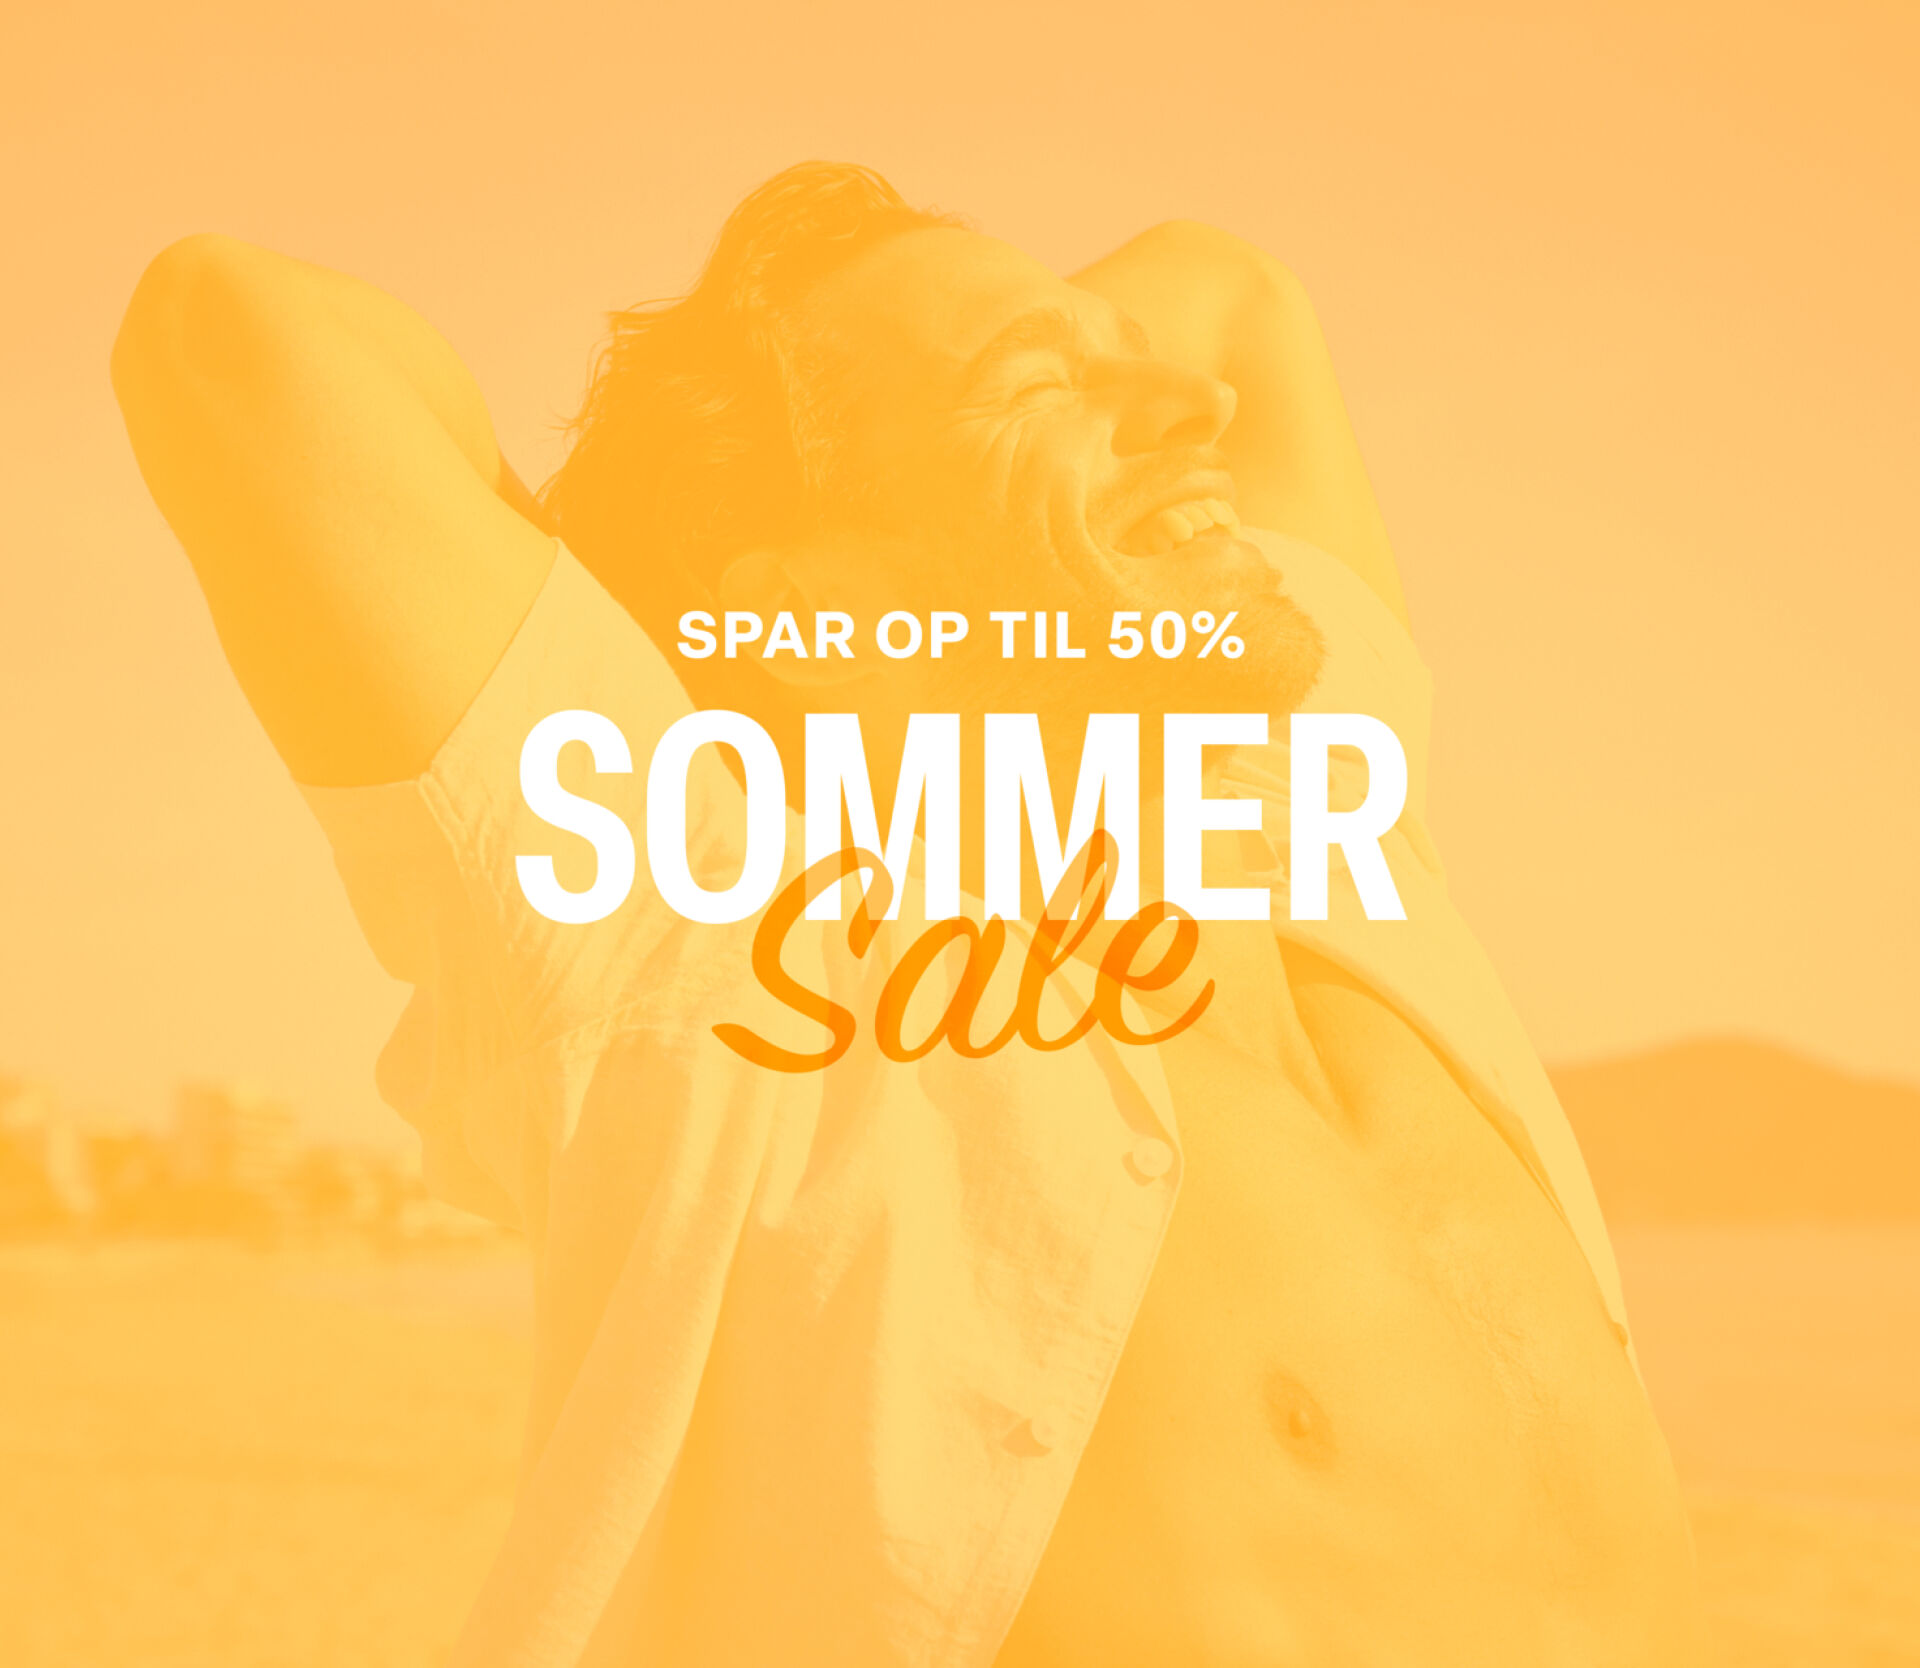 Sommer sale - Spar op til 50%